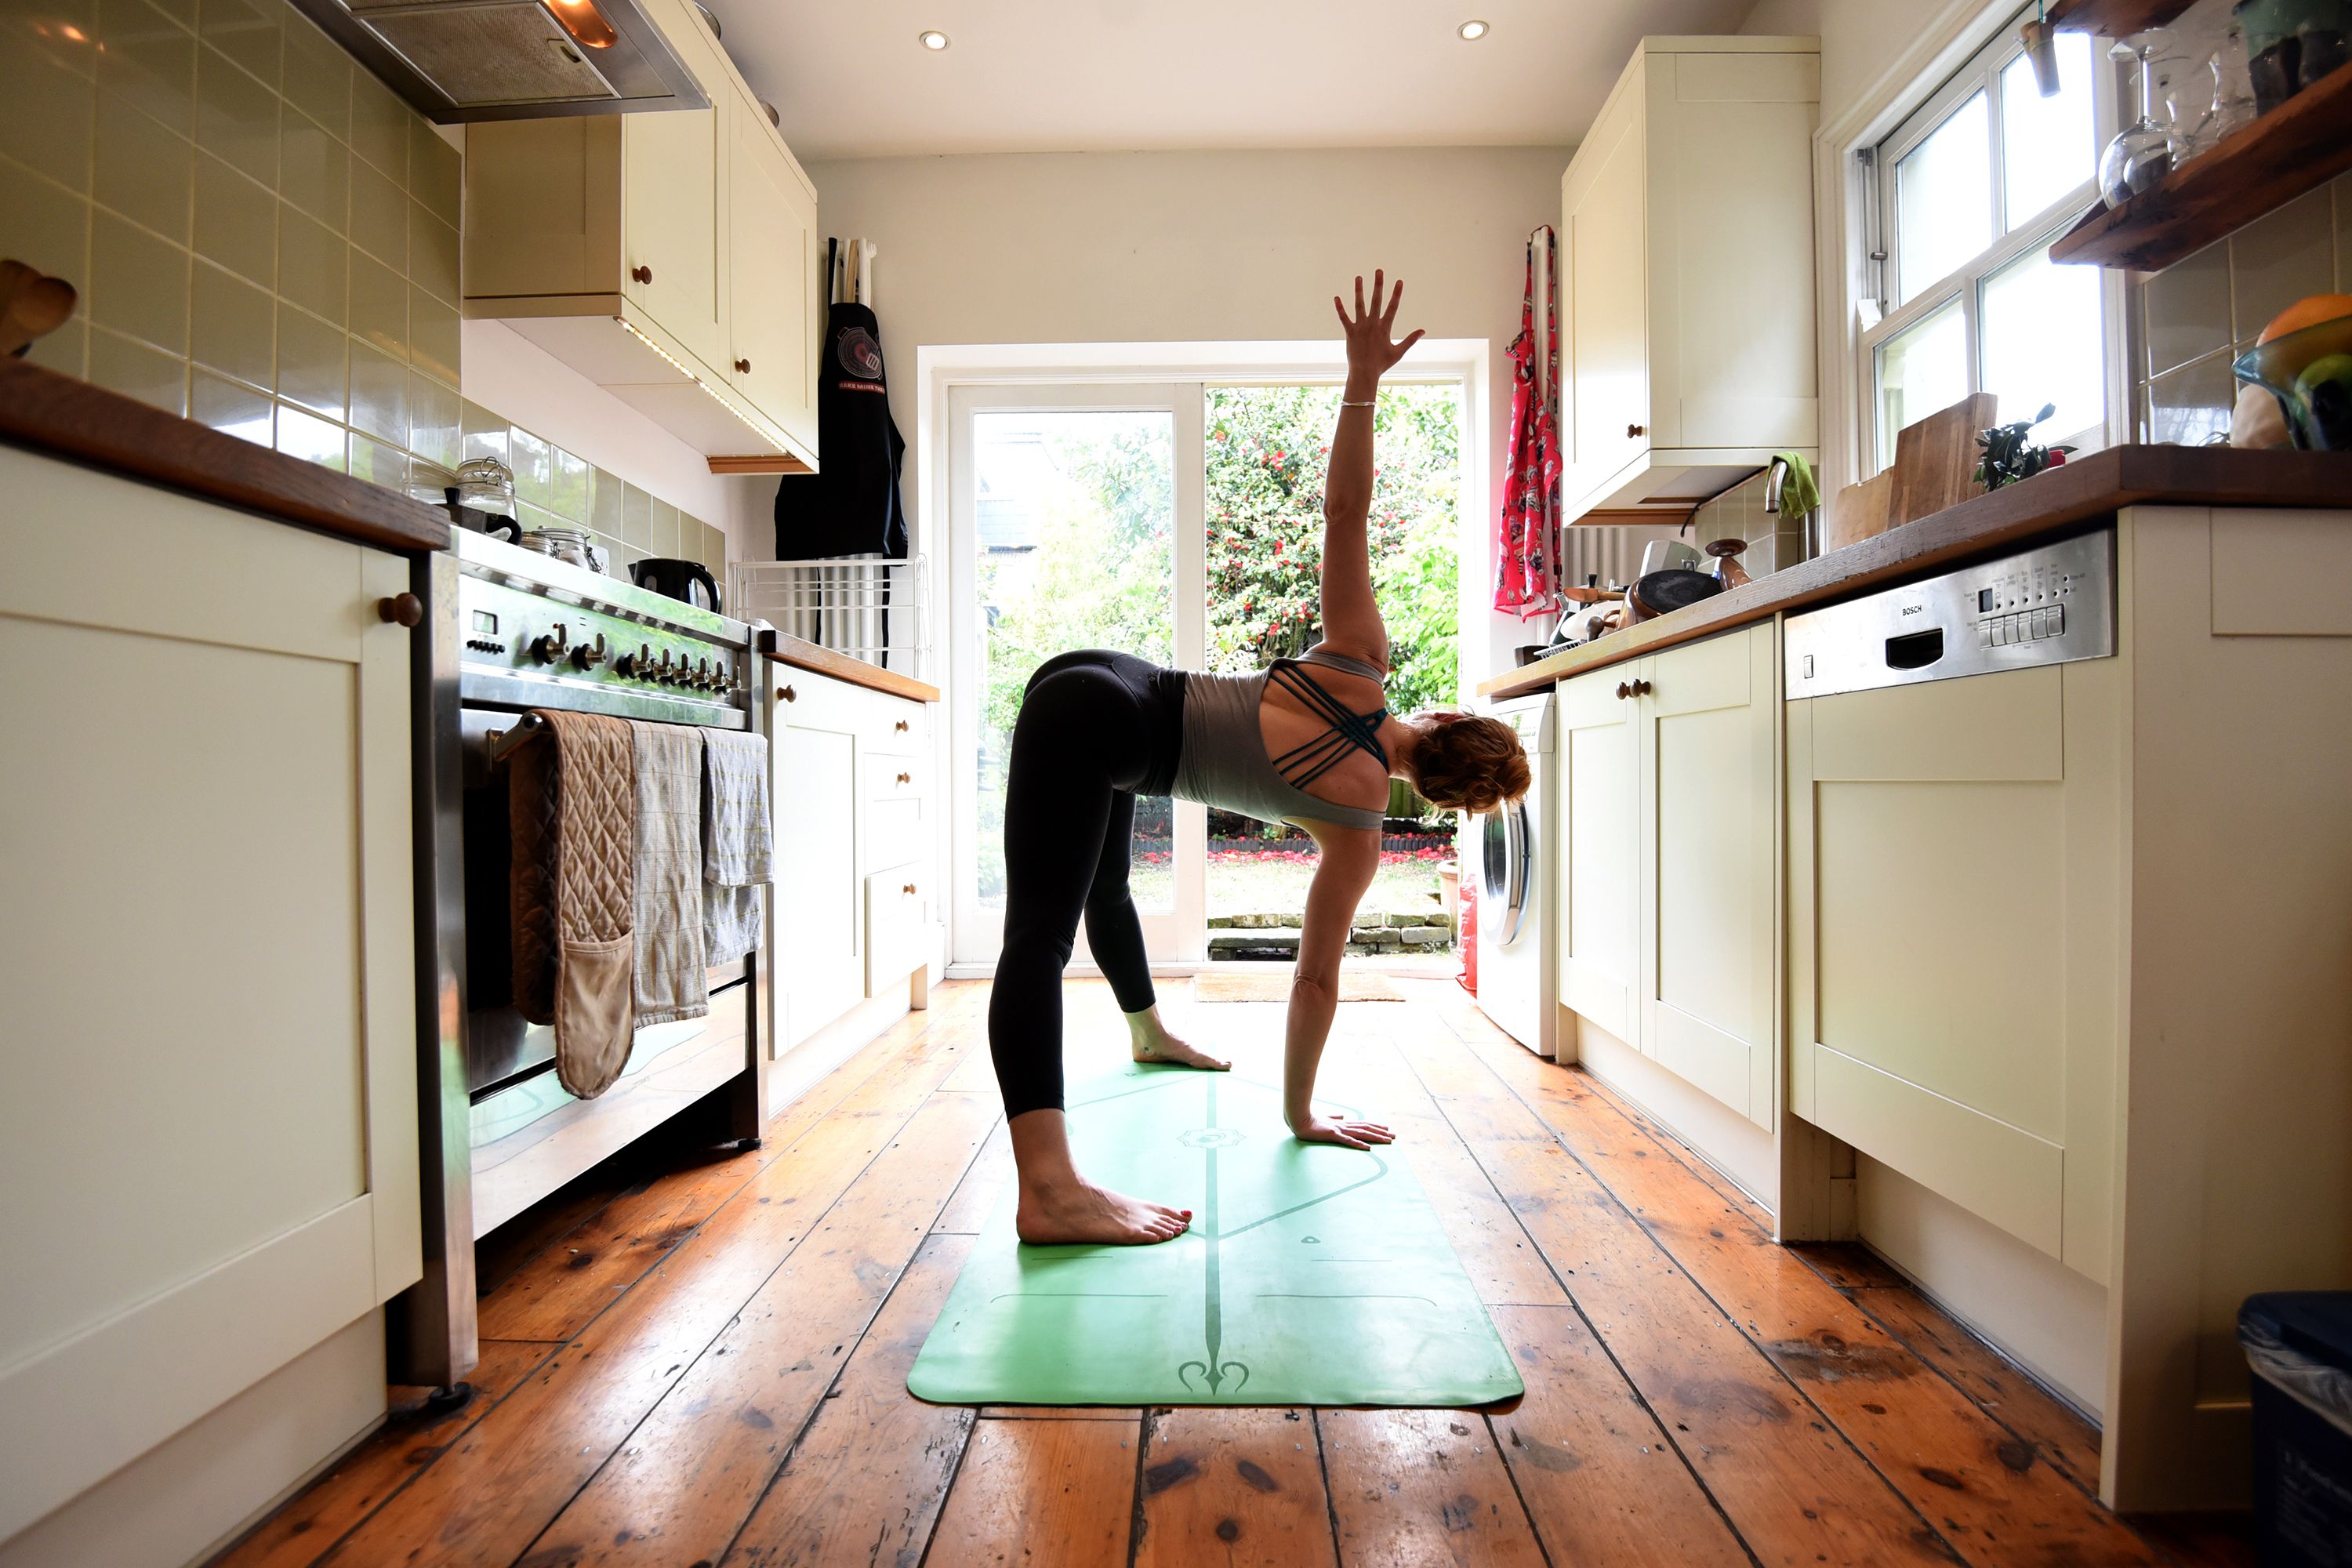 Yoga Class Teacher Xnxx - How to Do Hot Yoga At Home 2021 | The Strategist